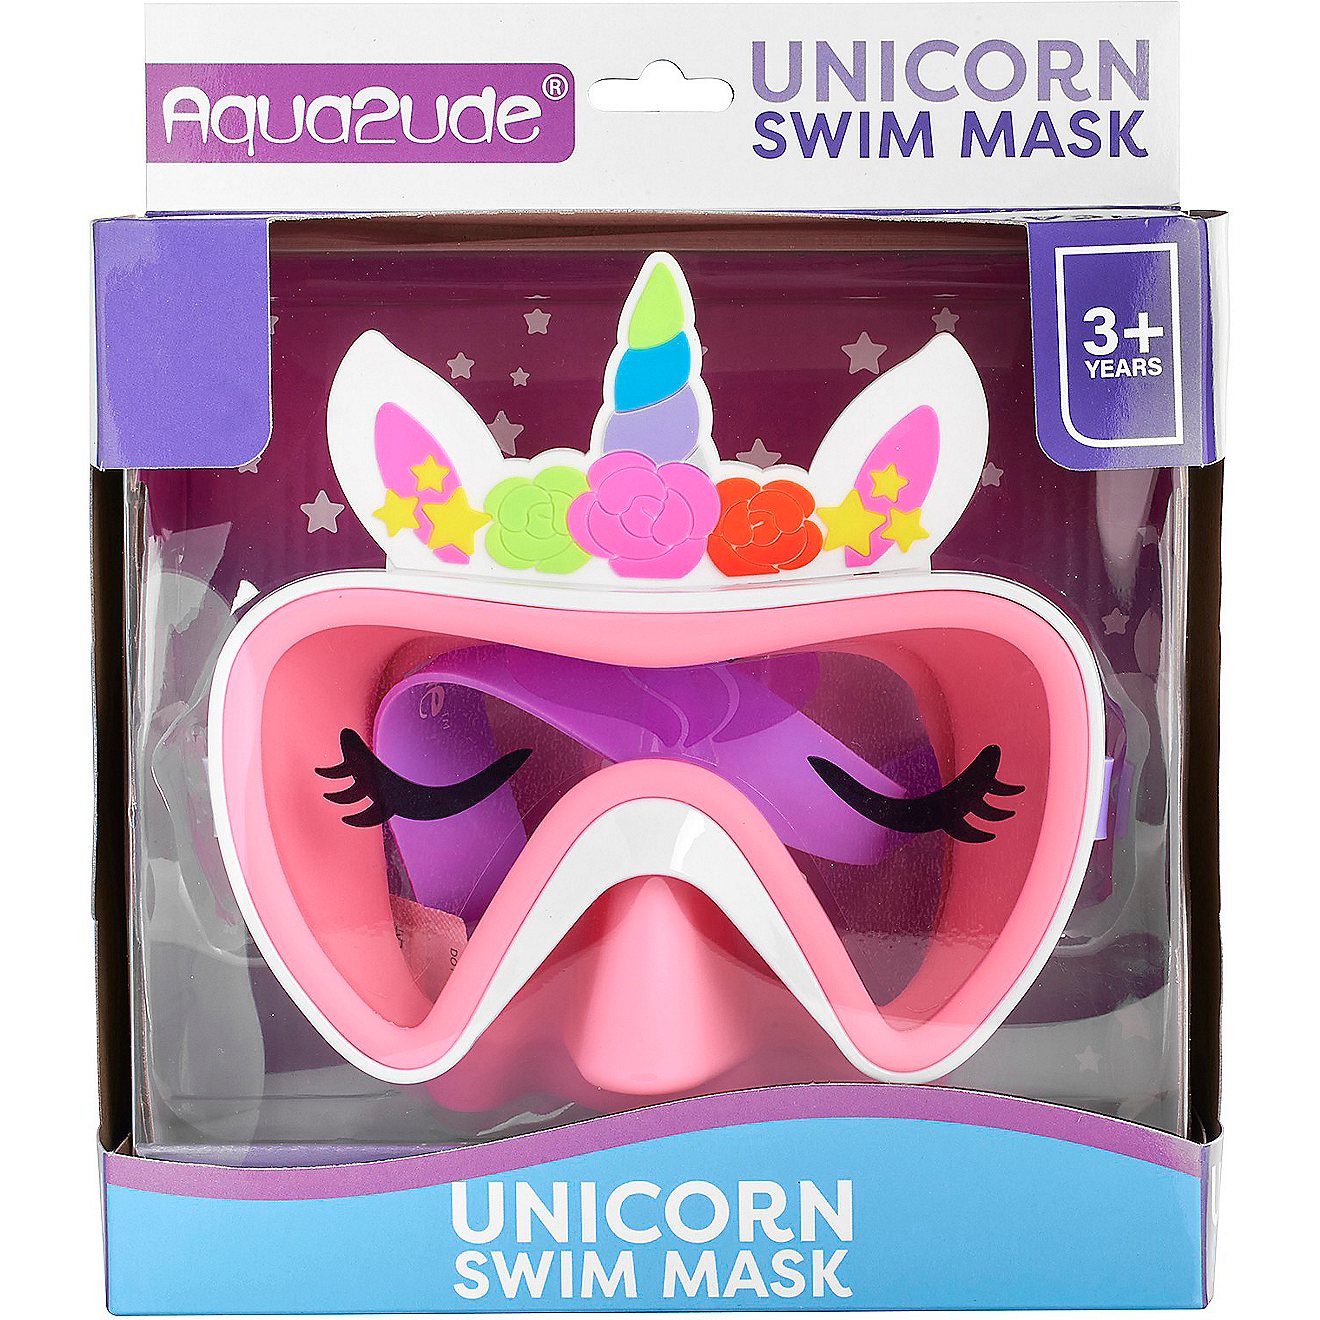 Aqua2ude Girls' Novelty Unicorn Swim Mask                                                                                        - view number 1